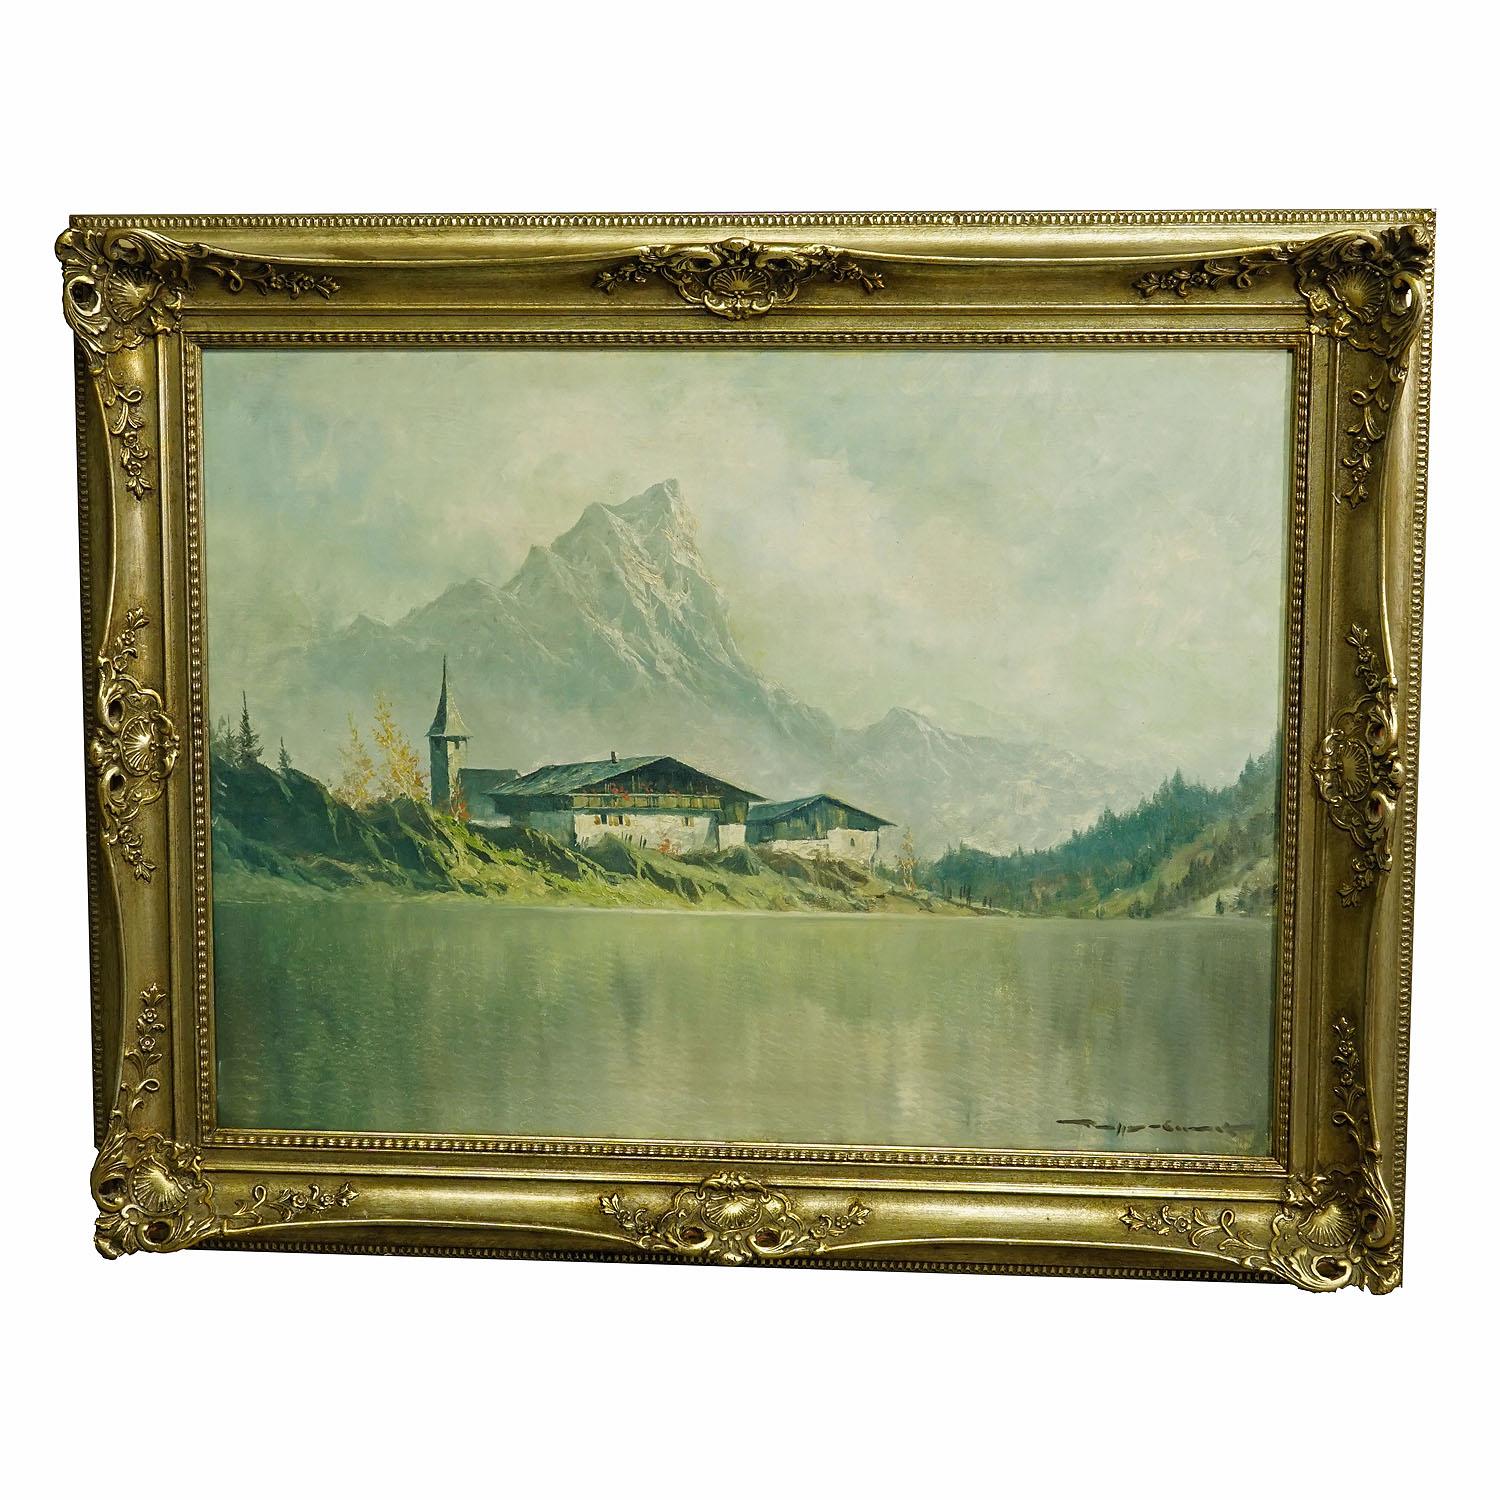 Hochgebirgslandschaft mit Alpensee bei Kufstein, ca. 1950er Jahre

Ein großes impressionistisches Ölgemälde, das eine Hochgebirgslandschaft mit Bergsee und volkstümlicher Berghütte vor dem Kaisergebirge bei Kufstein in Österreich darstellt.